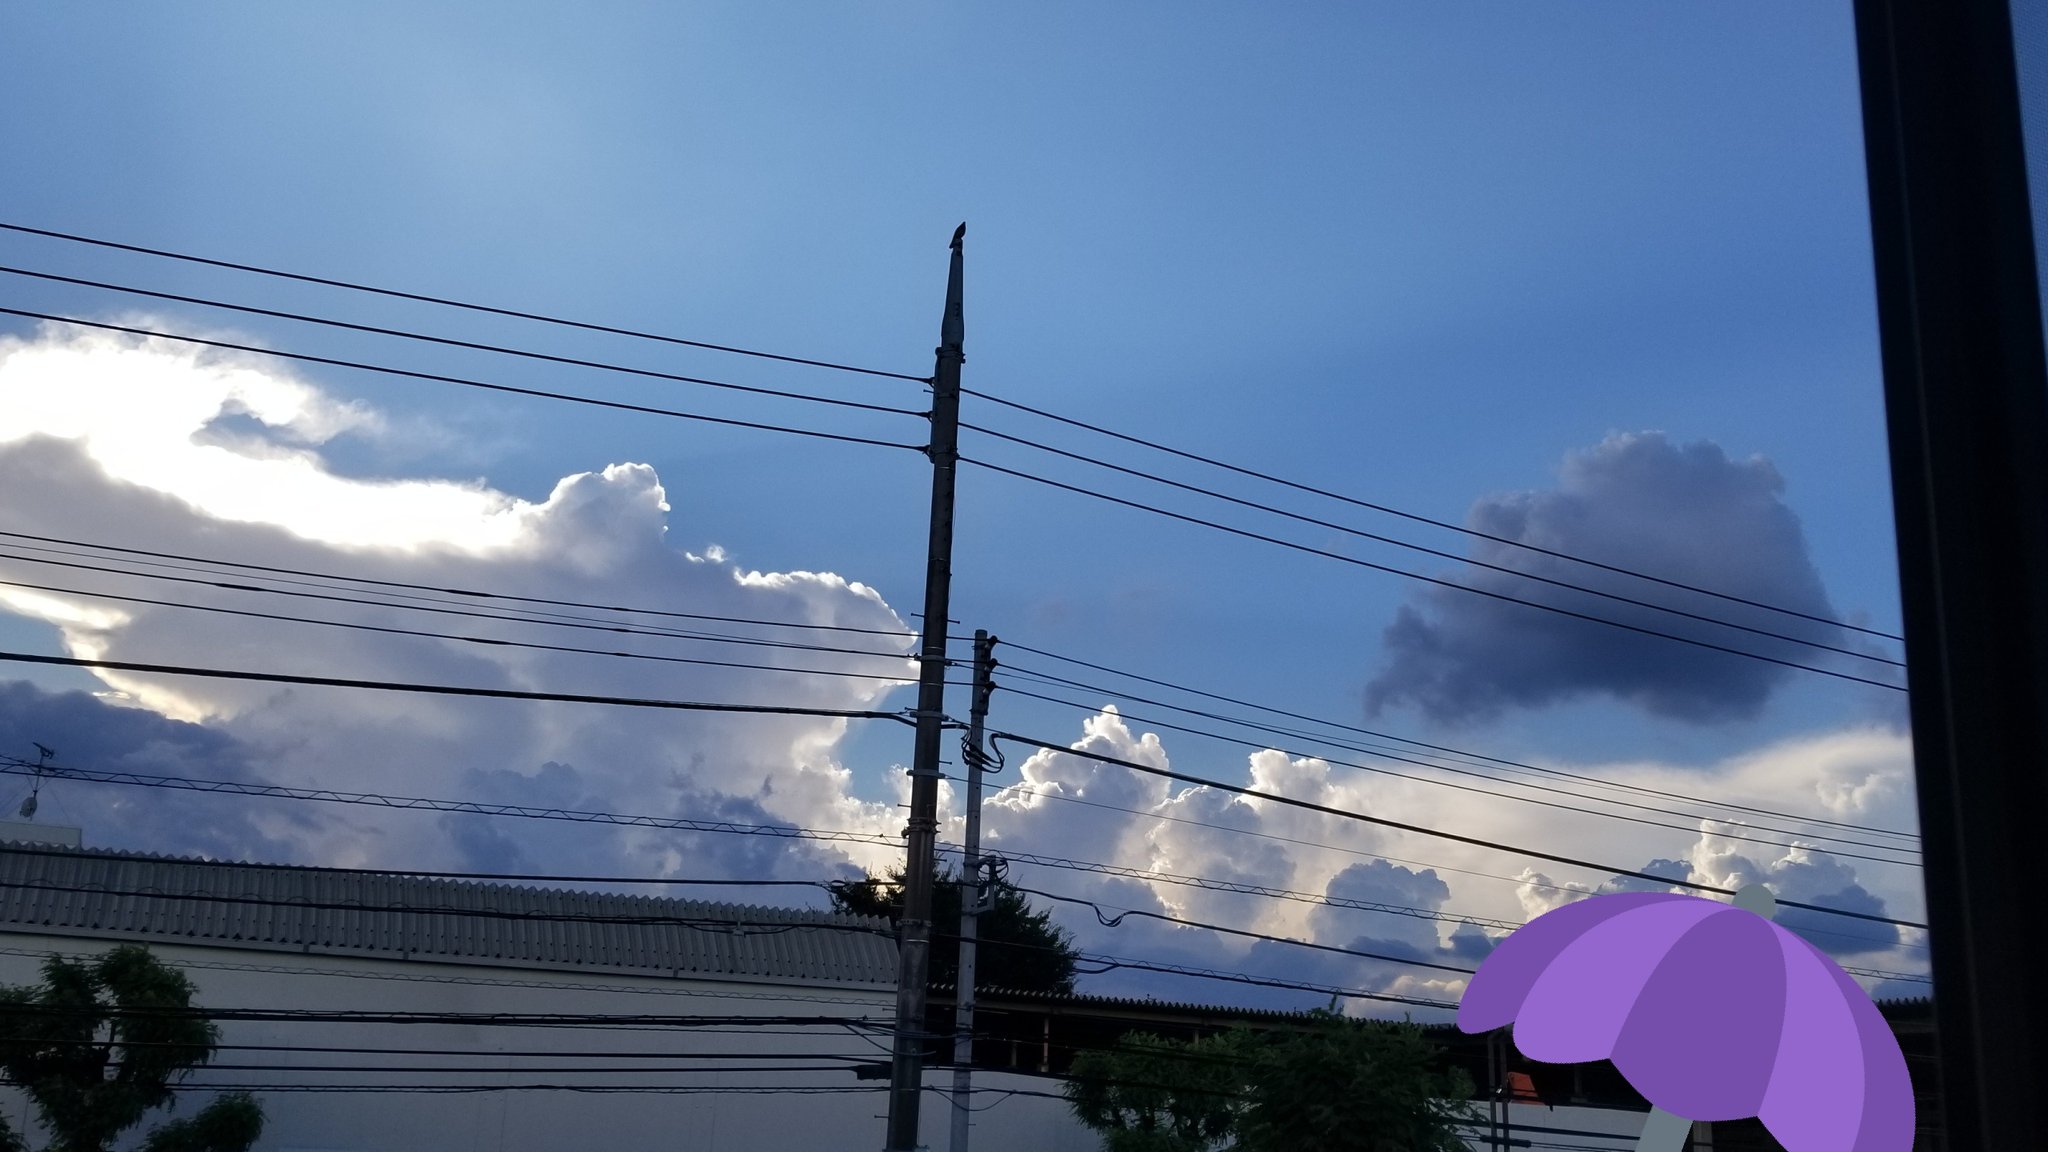 朱里 Shuri イラストみたいに綺麗な雲だなと思って T Co Xihvmobzv3 Twitter